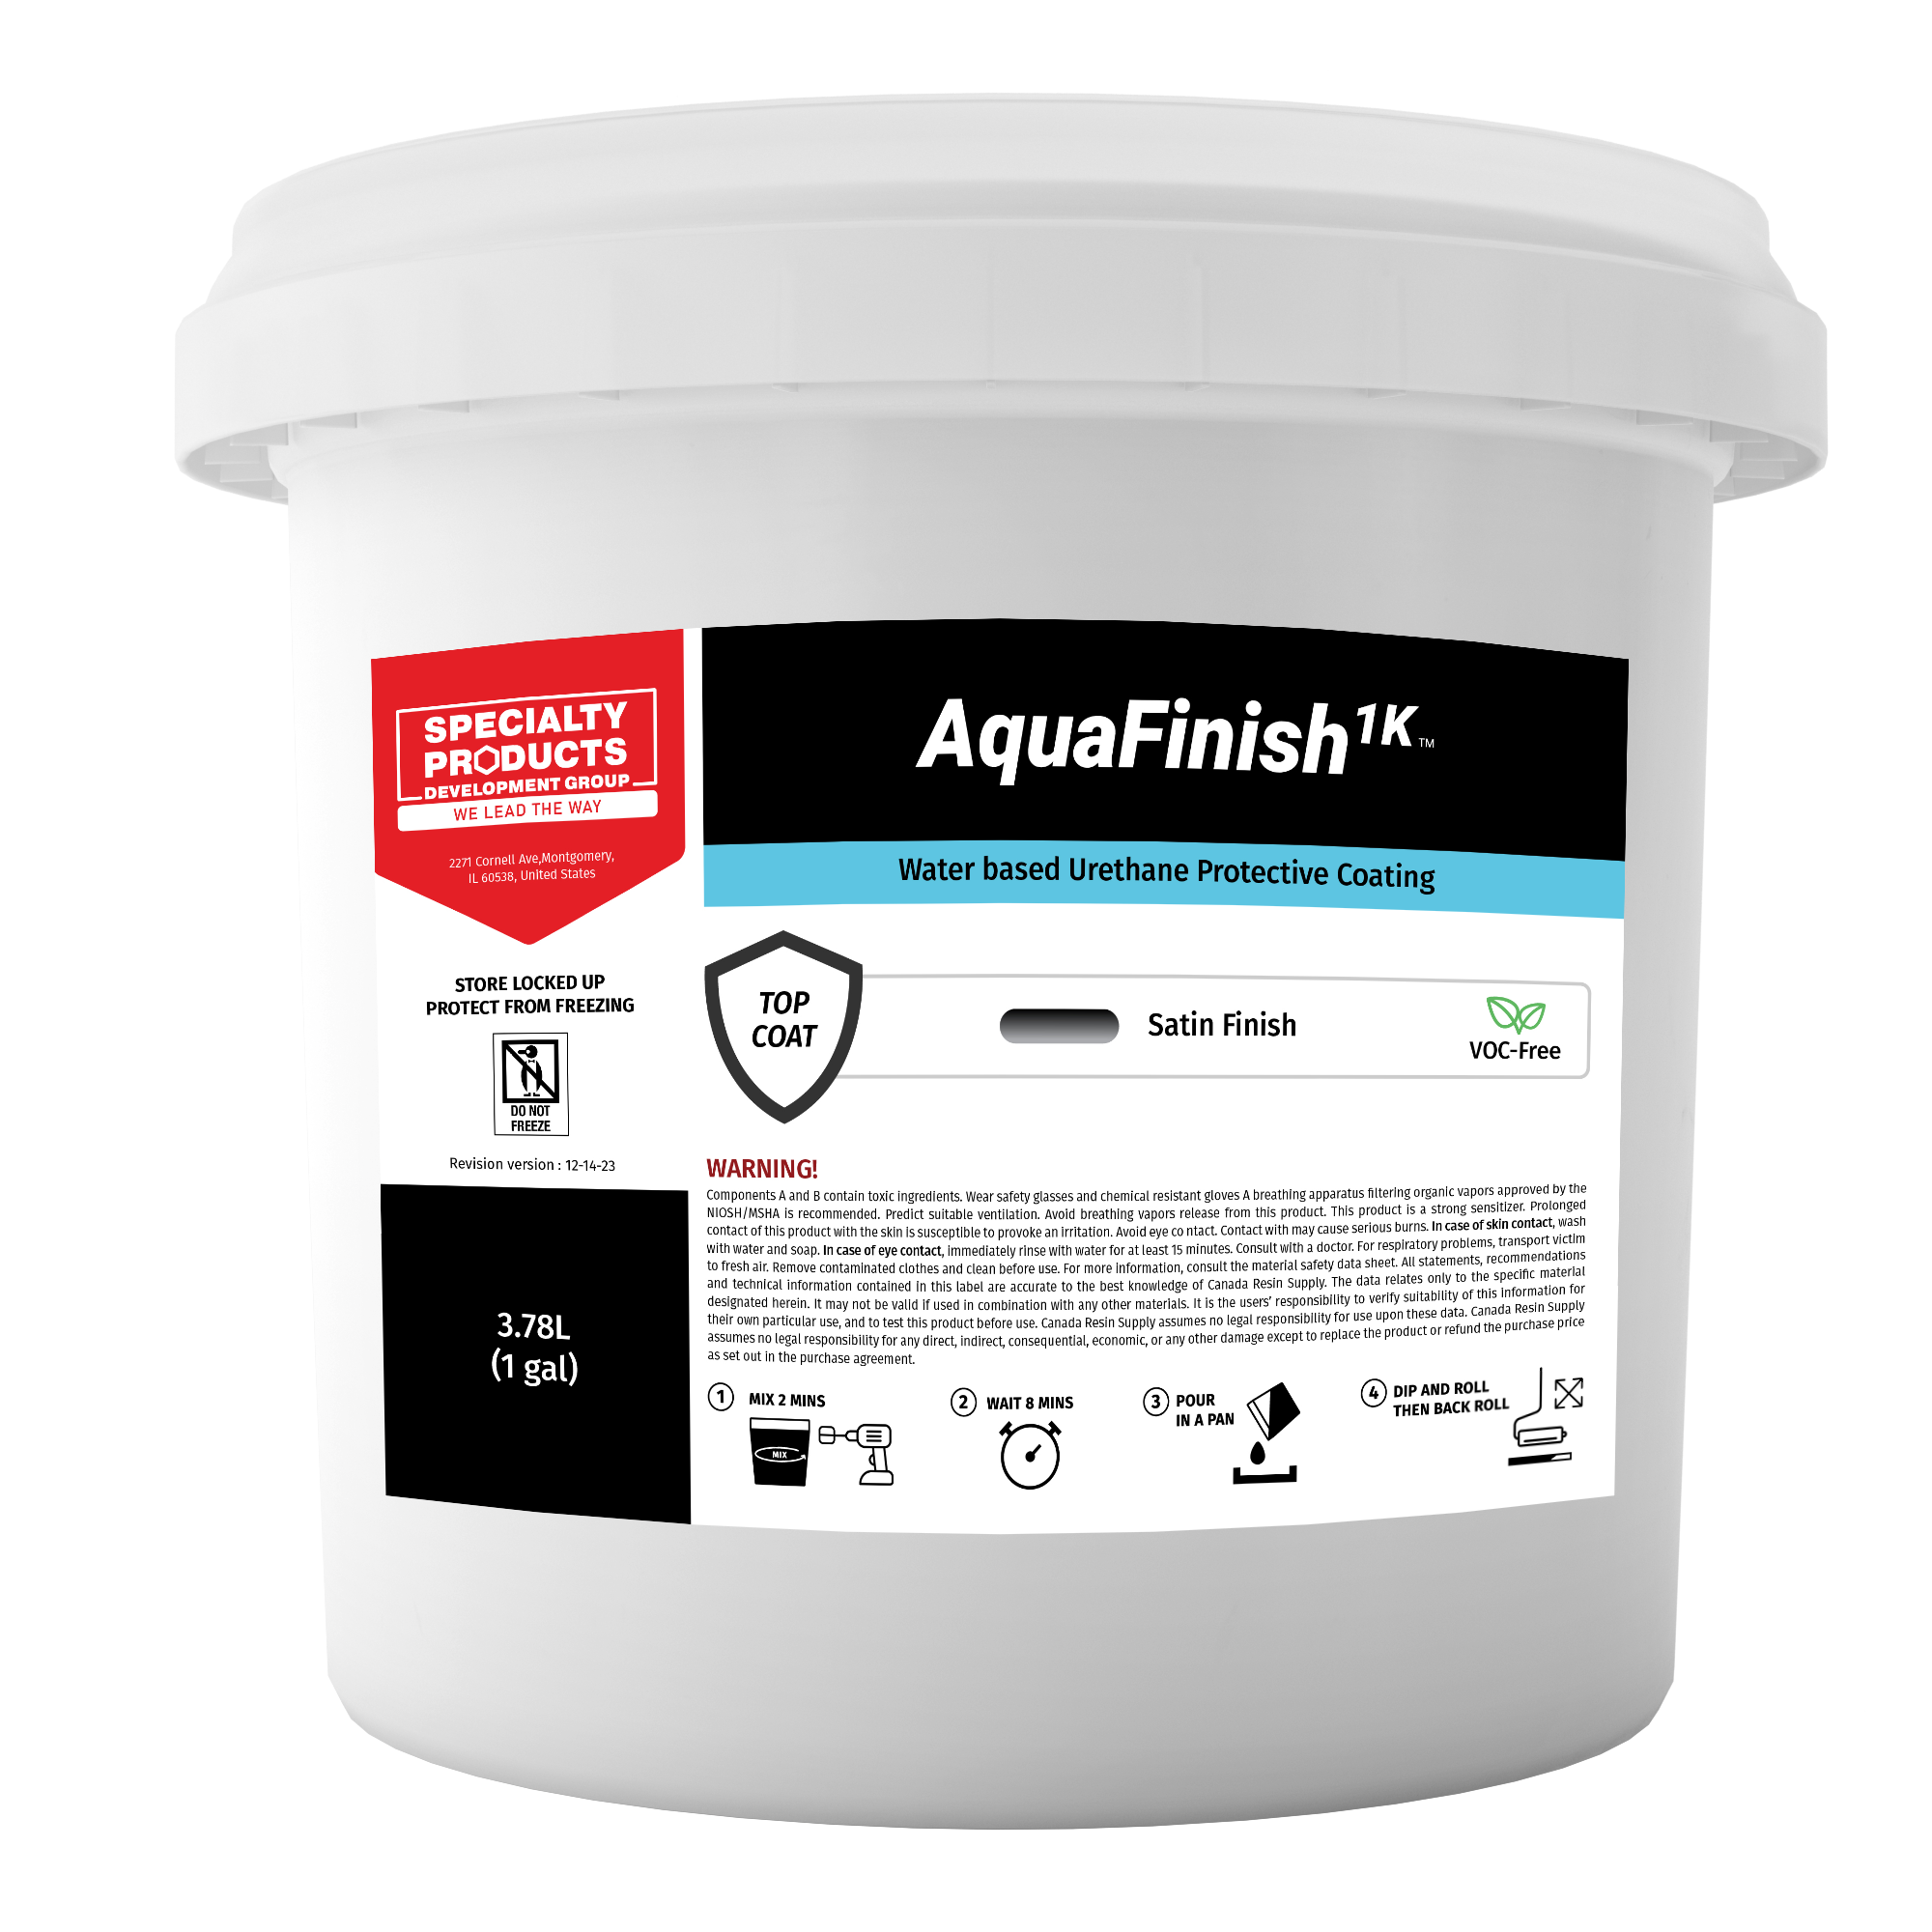 AquaFinish 1K ™ Water based Urethane Protective Coating 1 GAL